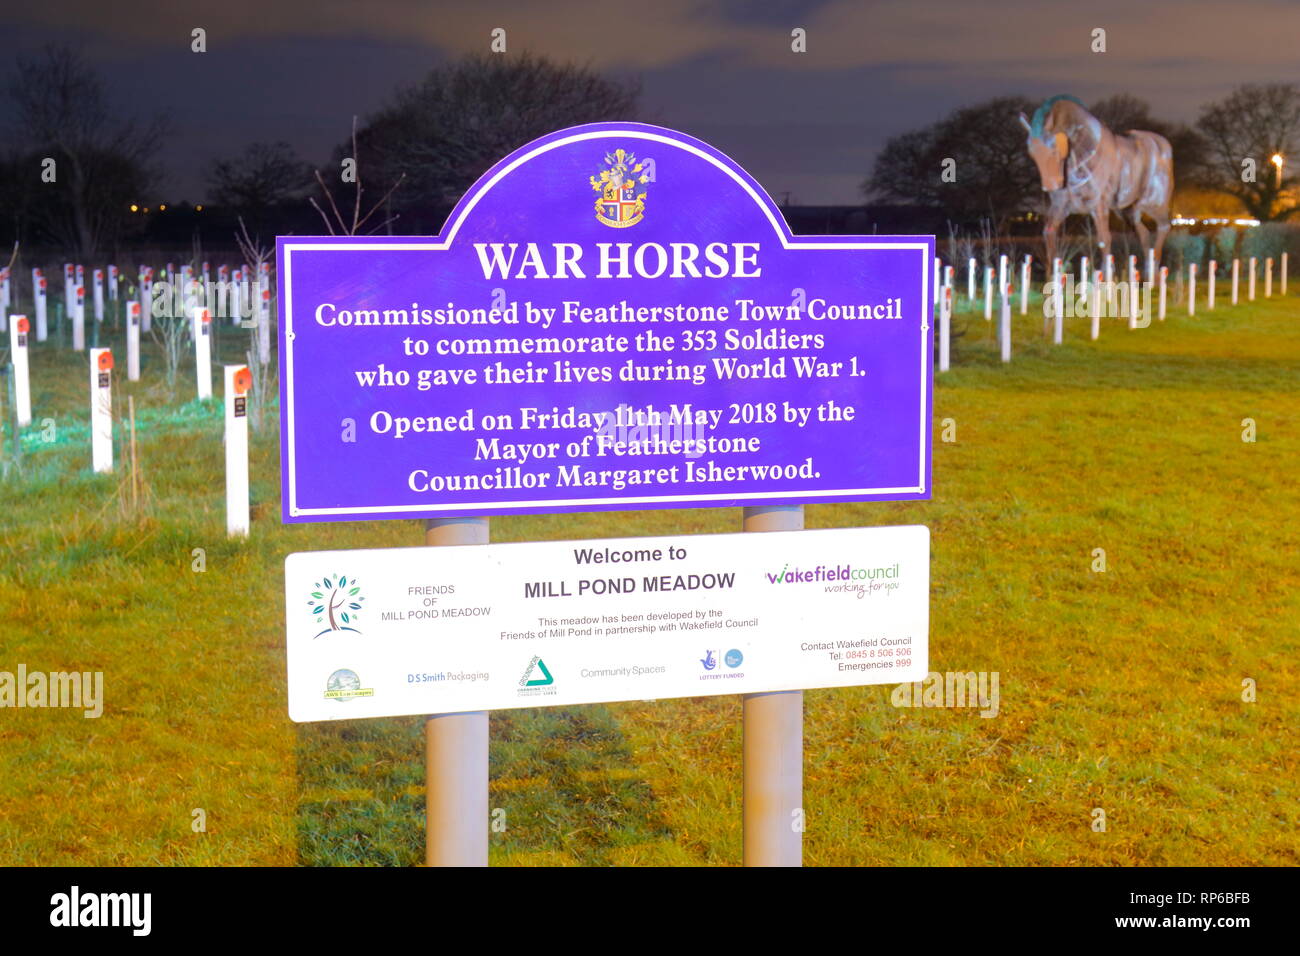 Scheda di informazioni al laminatoio Pond prato in Featherstone, che offre ai visitatori una breve storia del War Horse scultura che è stato installato presso il sito. Foto Stock